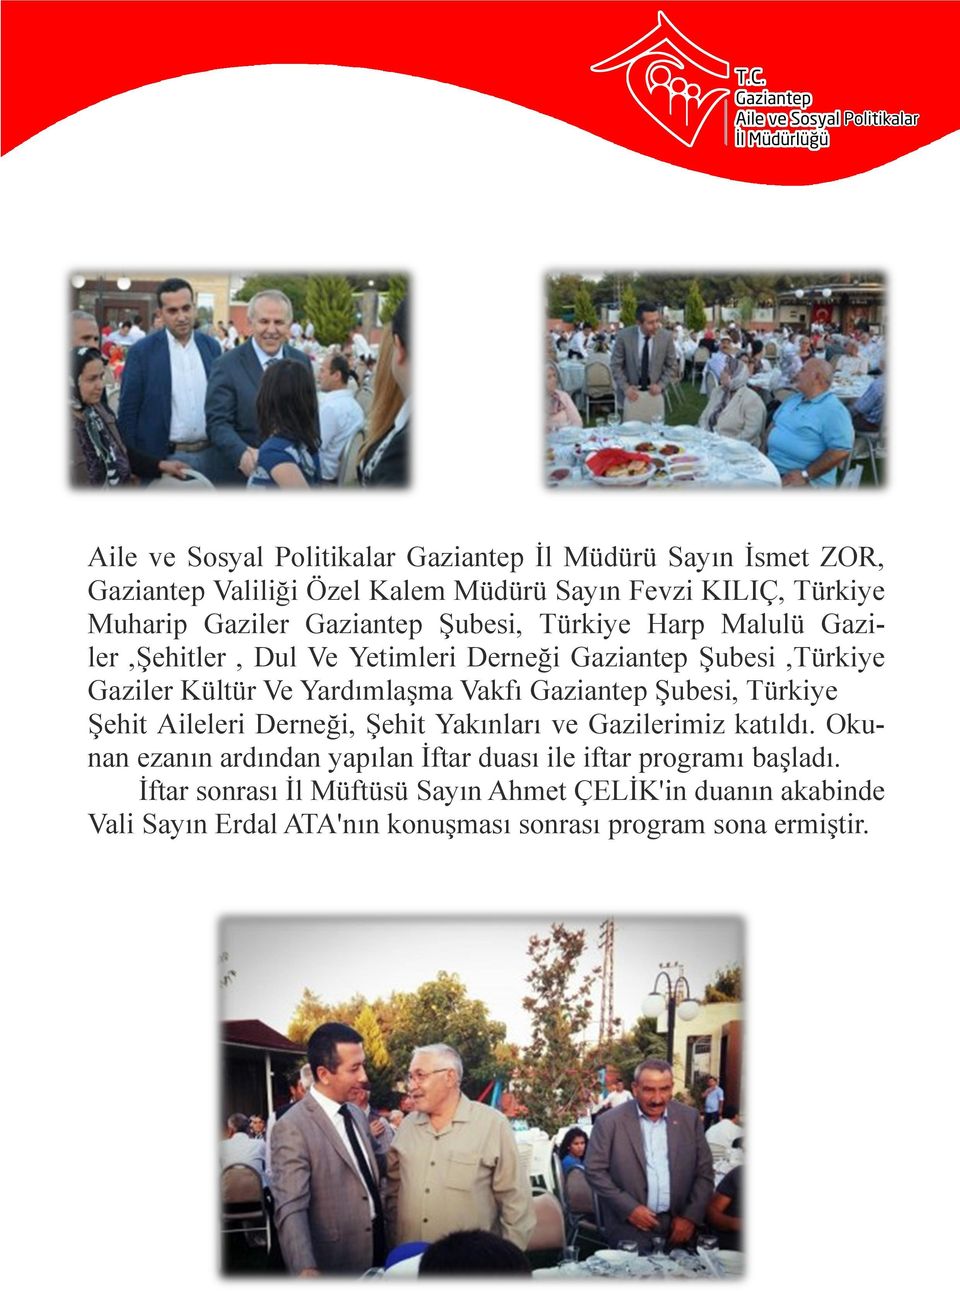 Gaziantep Şubesi, Türkiye Şehit Aileleri Derneği, Şehit Yakınları ve Gazilerimiz katıldı.